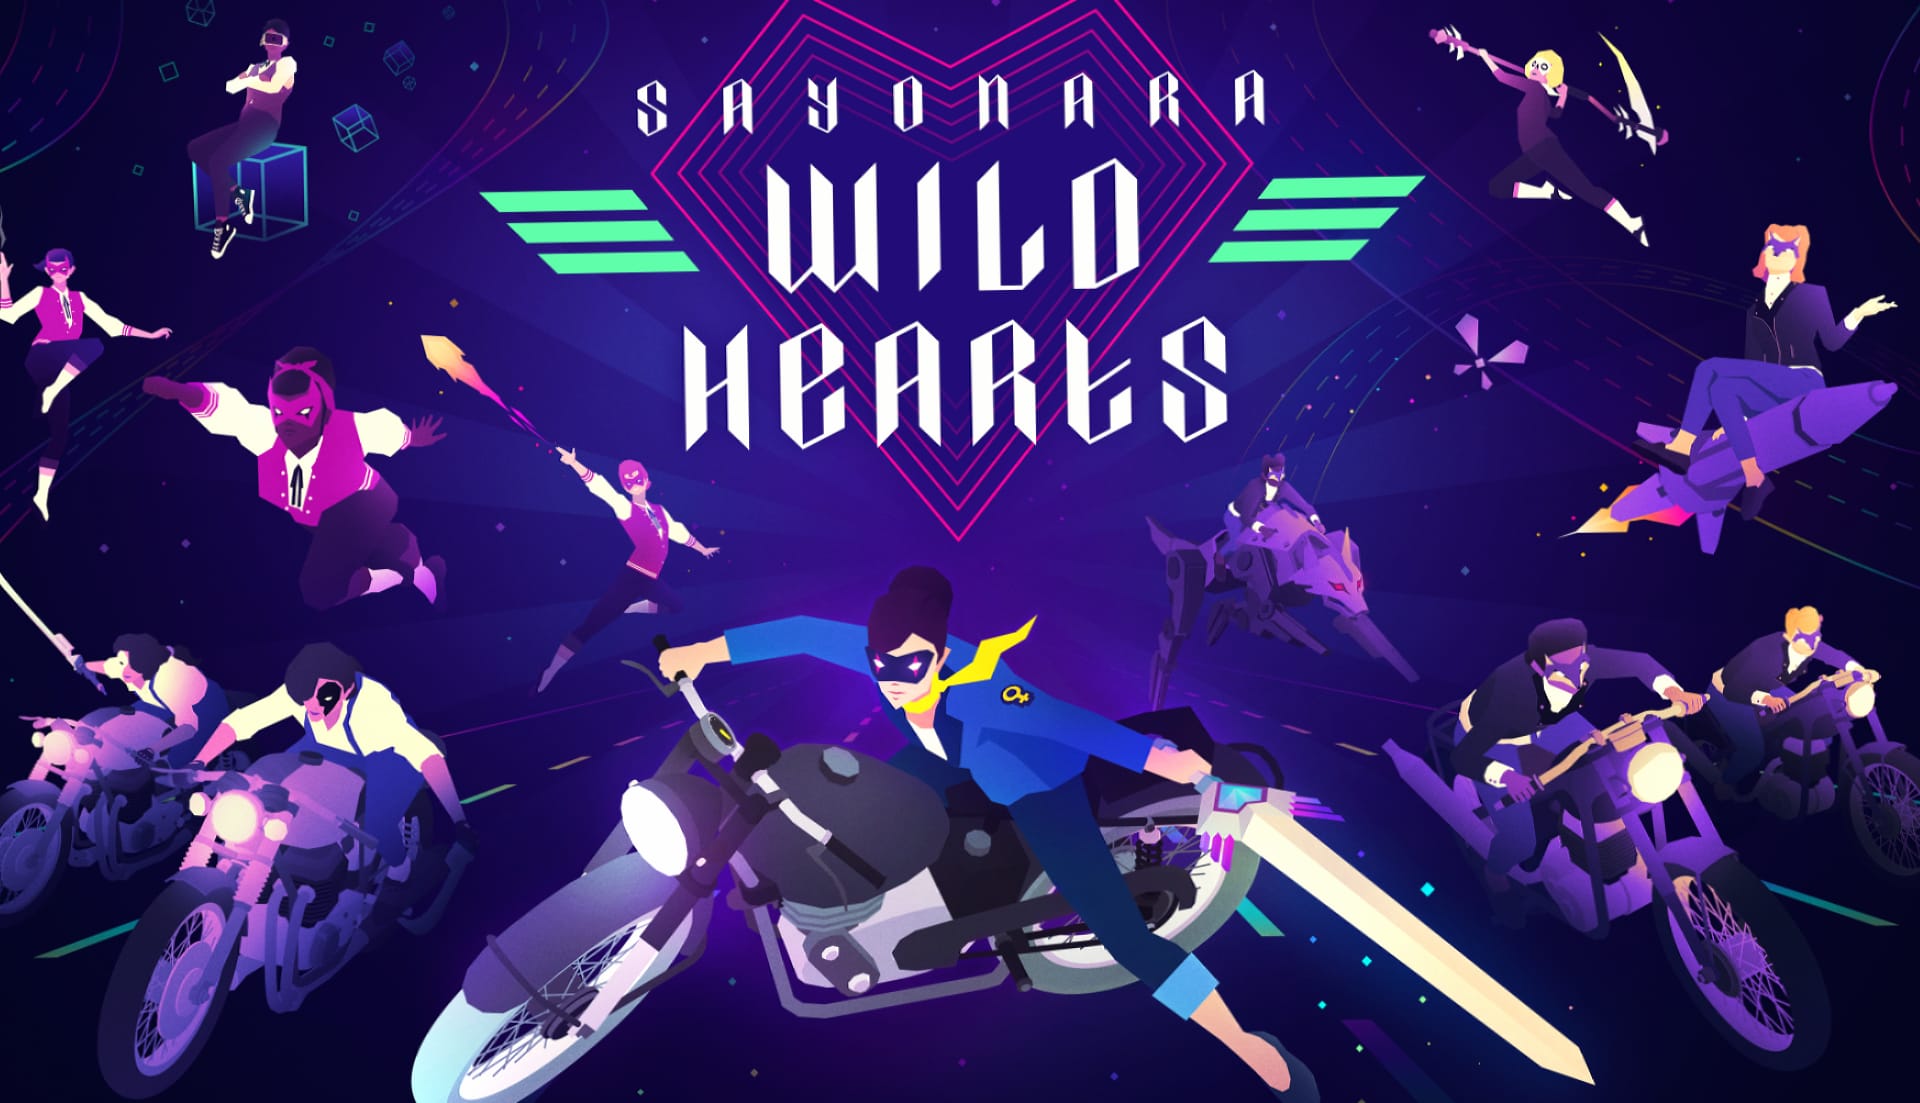 Sayonara Wild Hearts at 1024 x 1024 iPad size wallpapers HD quality